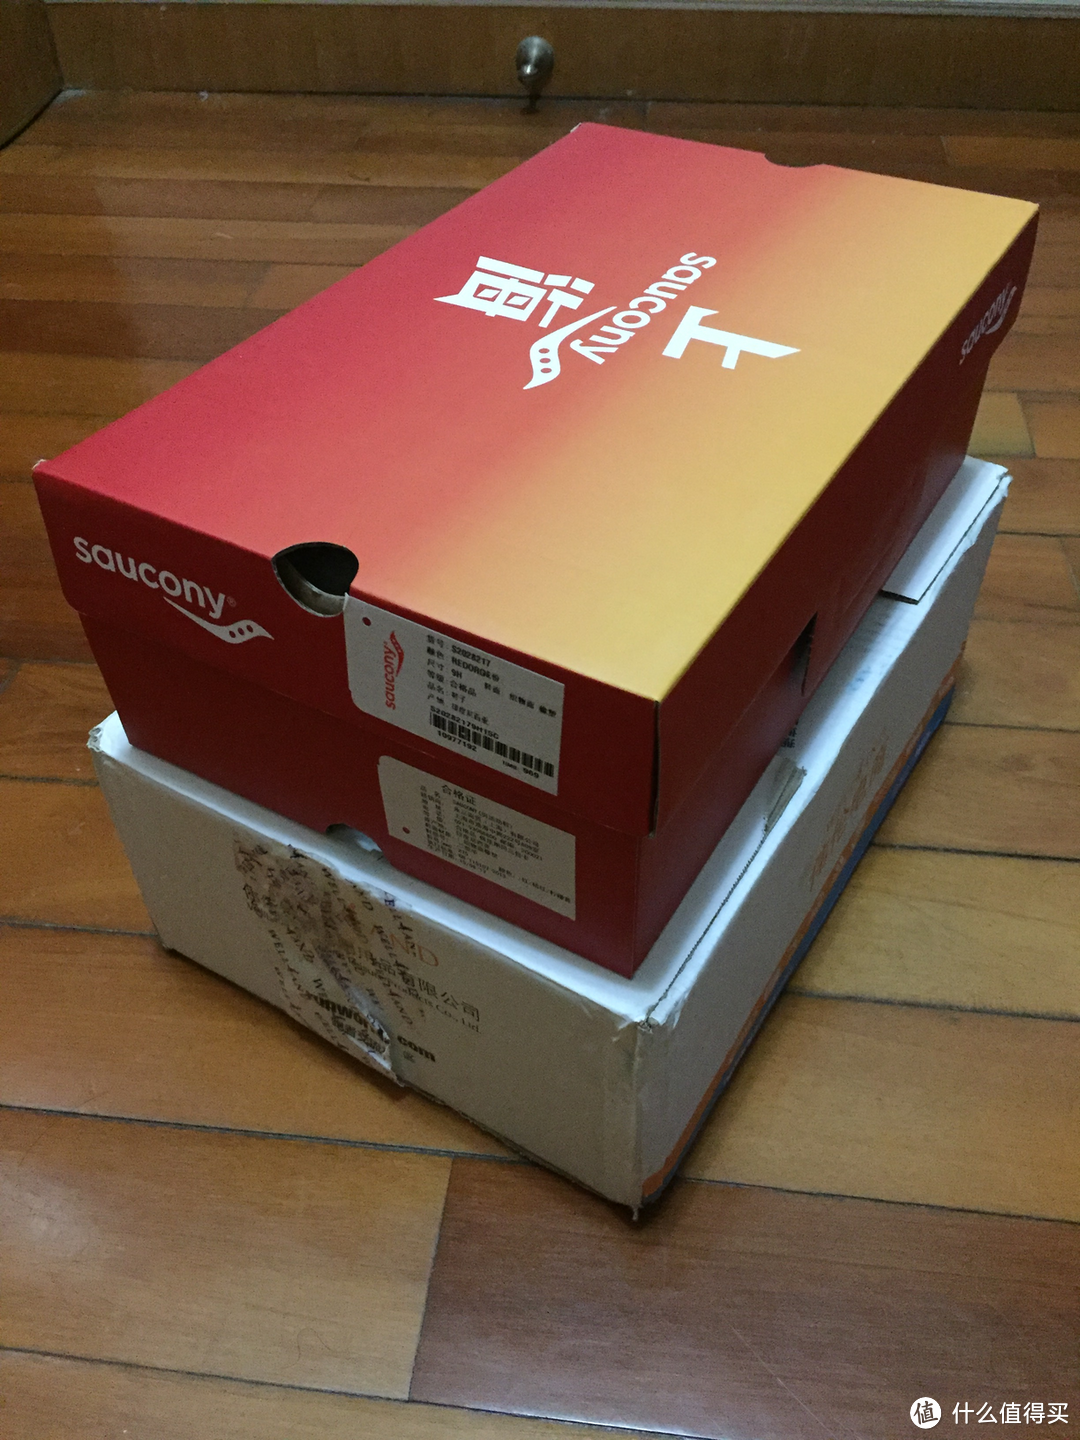 Saucony Kinvara 6「上海」限定款跑鞋开箱